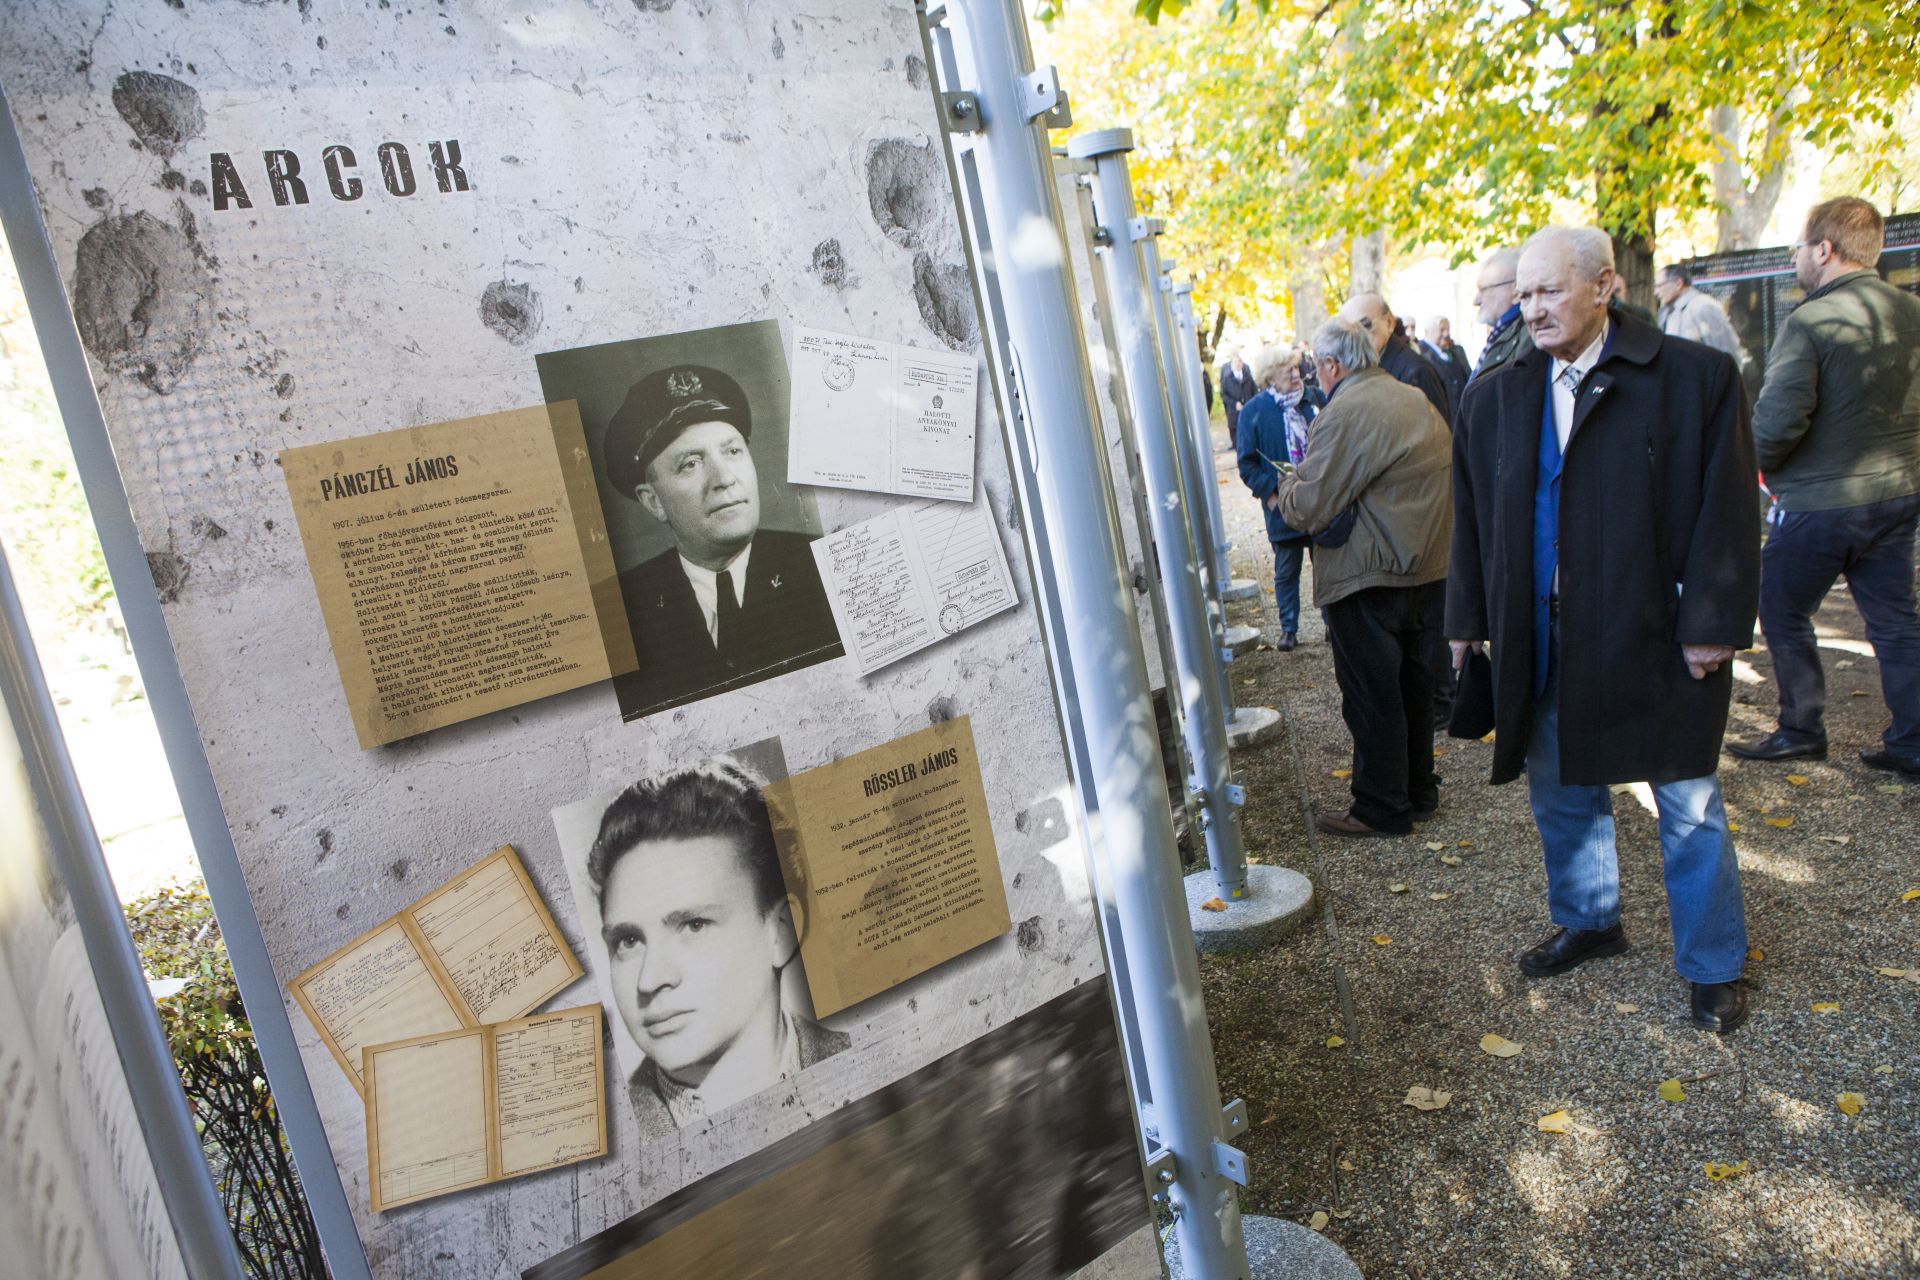 A Kossuth téri sortűz áldozatainak emlékére nyílt kiállítás a Fiumei úti sírkertben